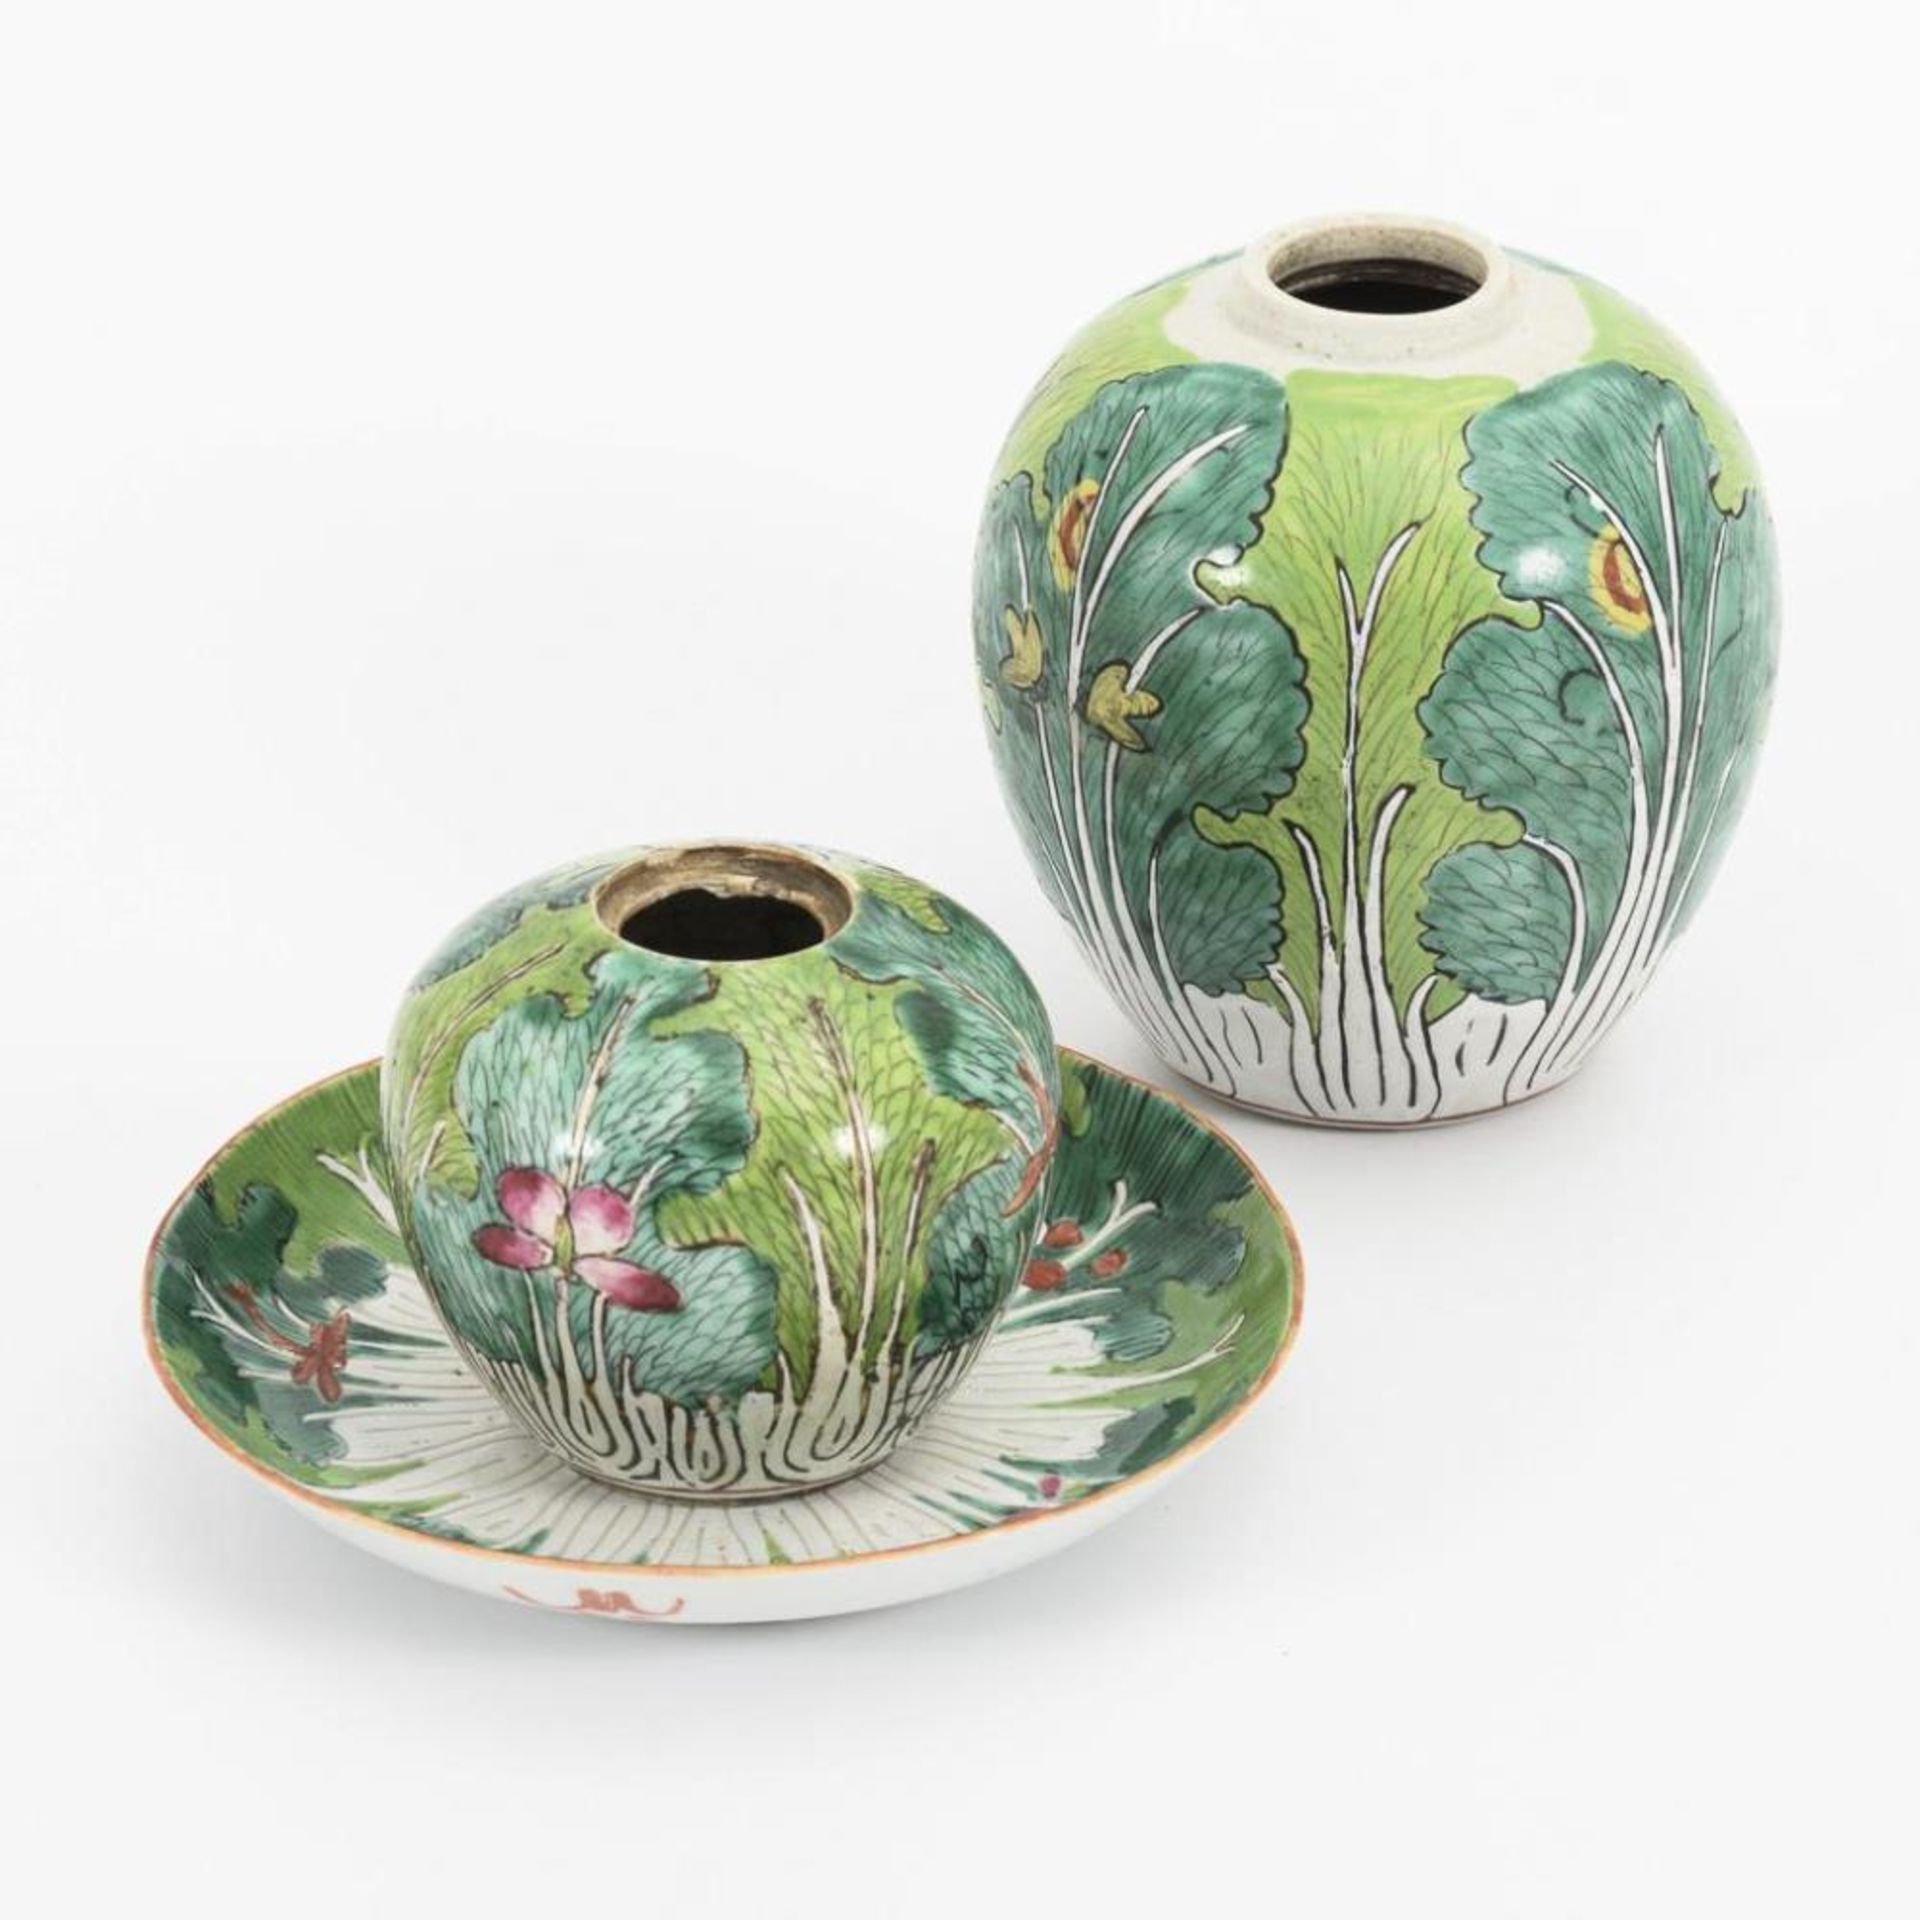 2 Vasen und 1 Schälchen mit grünem Blattdekor. - Image 3 of 4